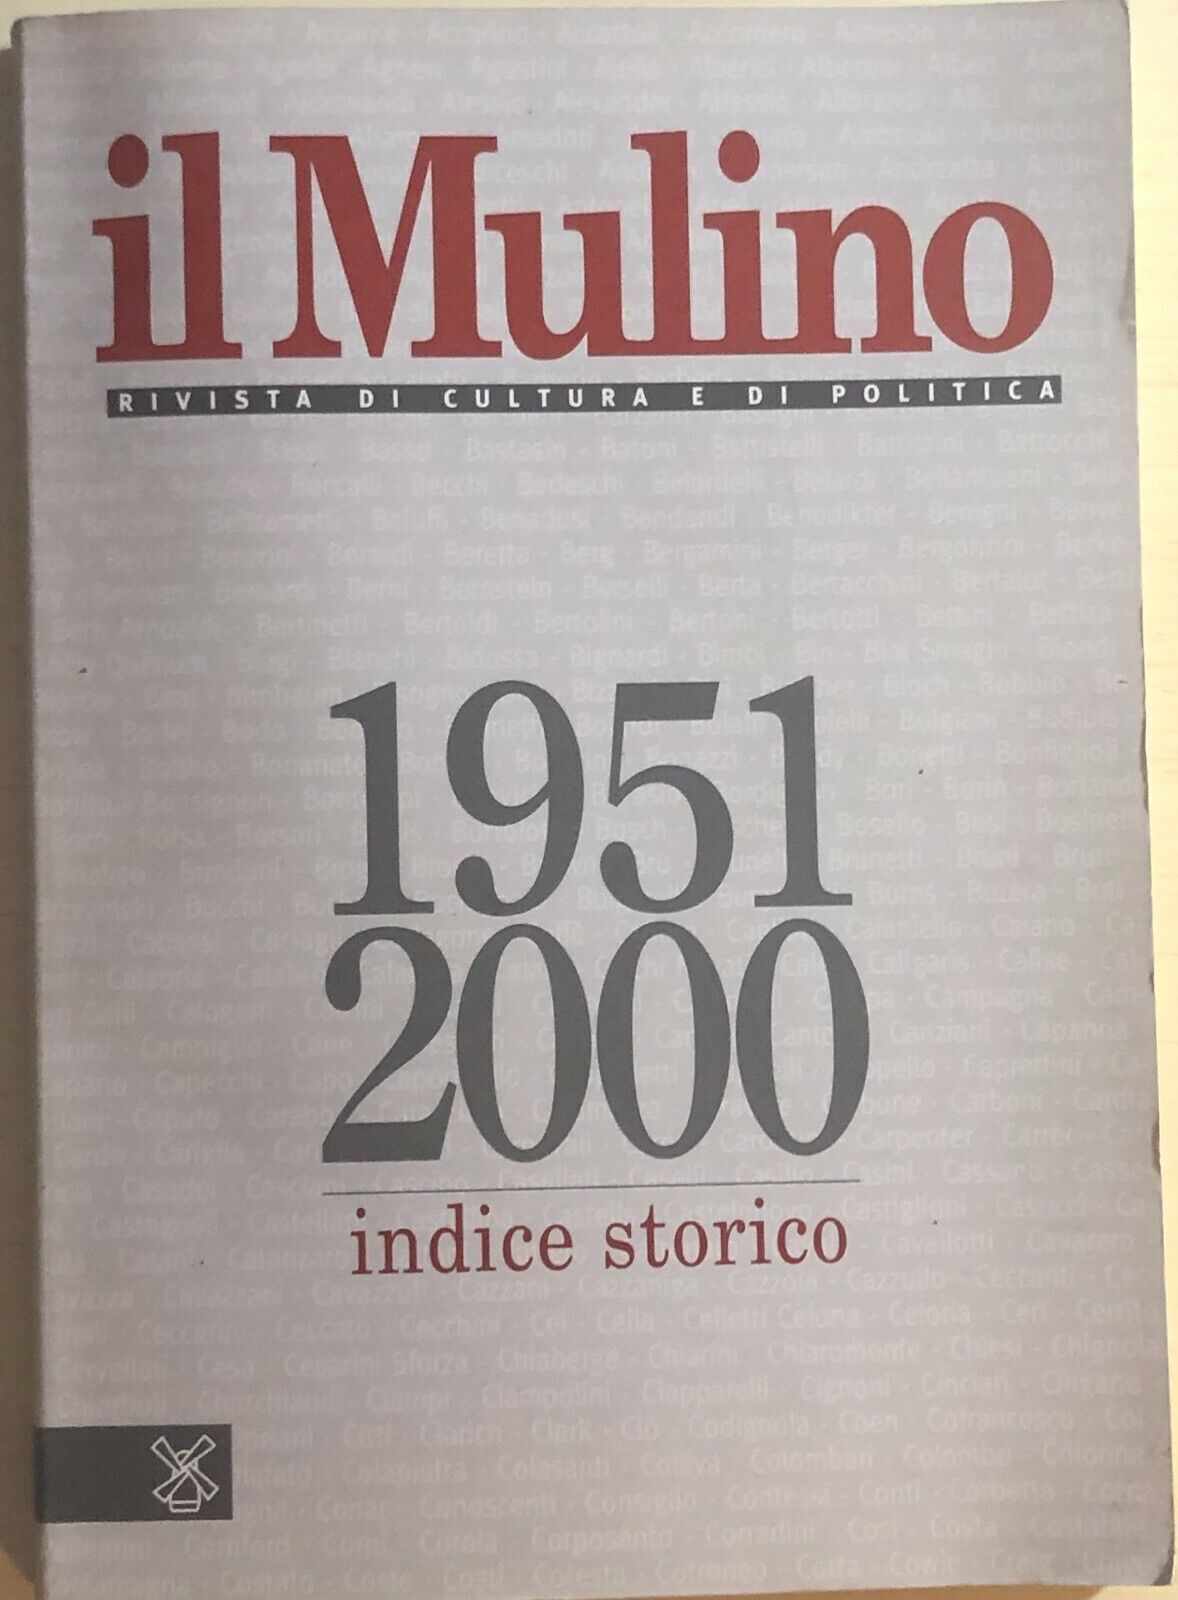 Il Mulino 1951-2000, indice storico di Aa.vv., 2001, Il Mulino